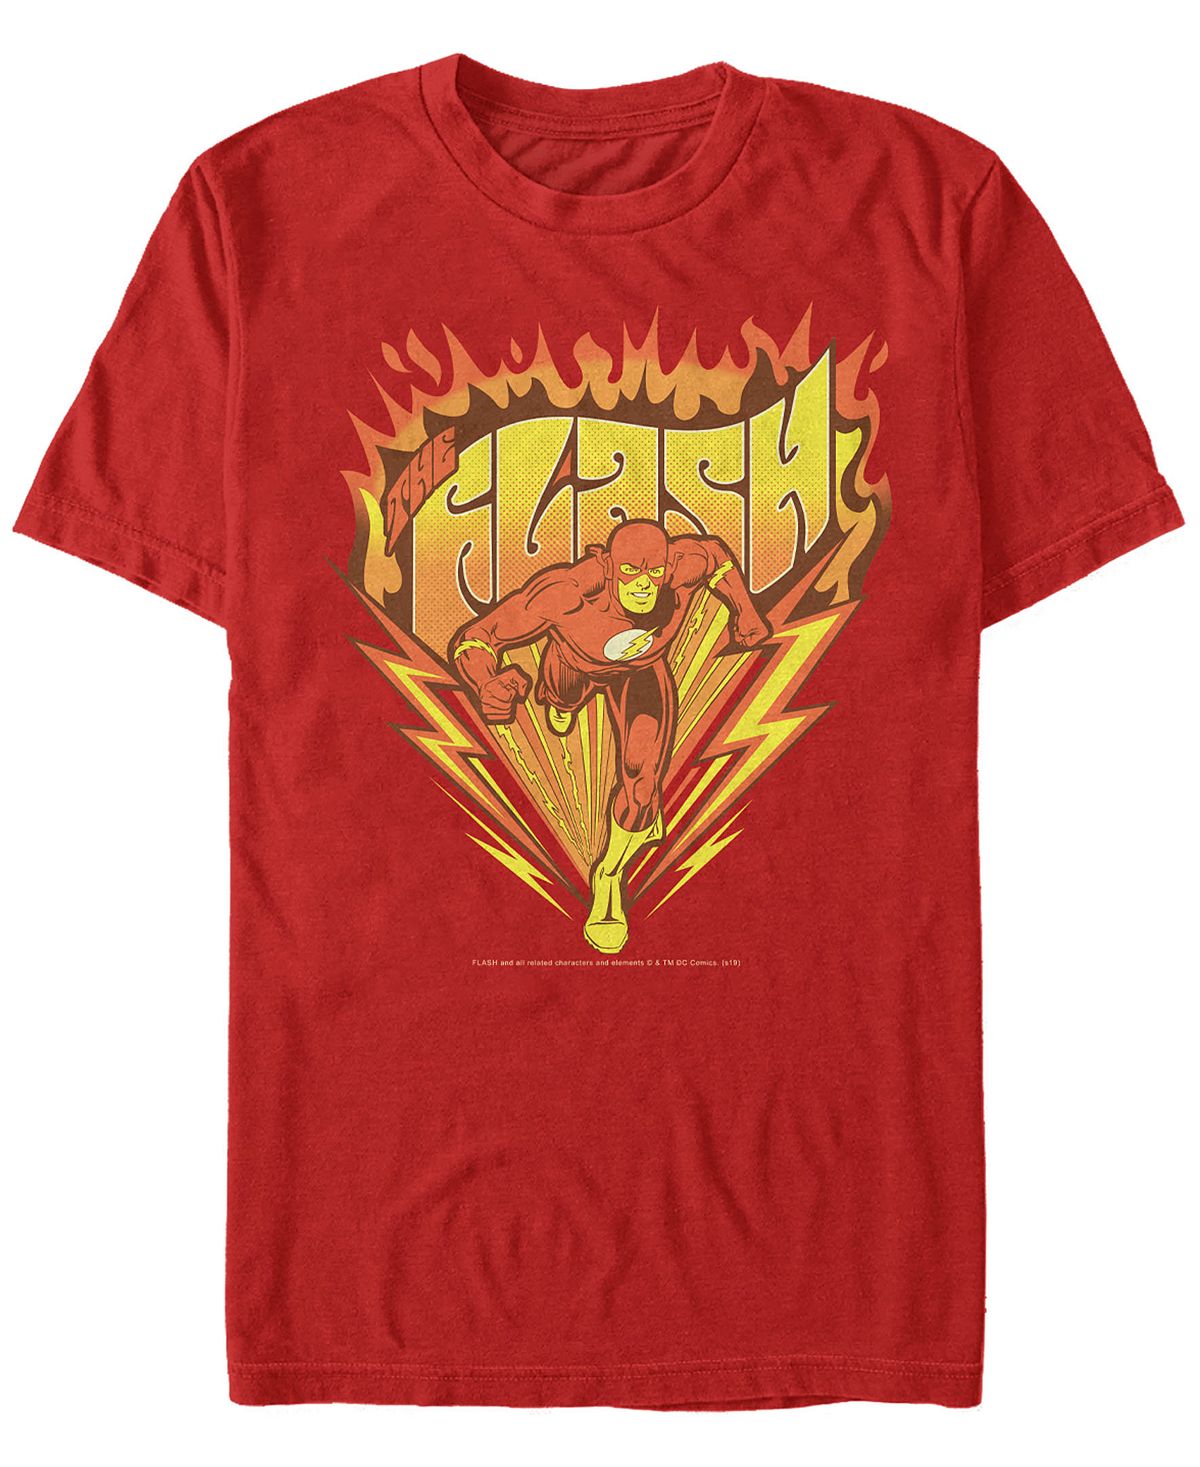 Мужская футболка с коротким рукавом с логотипом dc the flash retro fast as lightning Fifth Sun, красный цена и фото